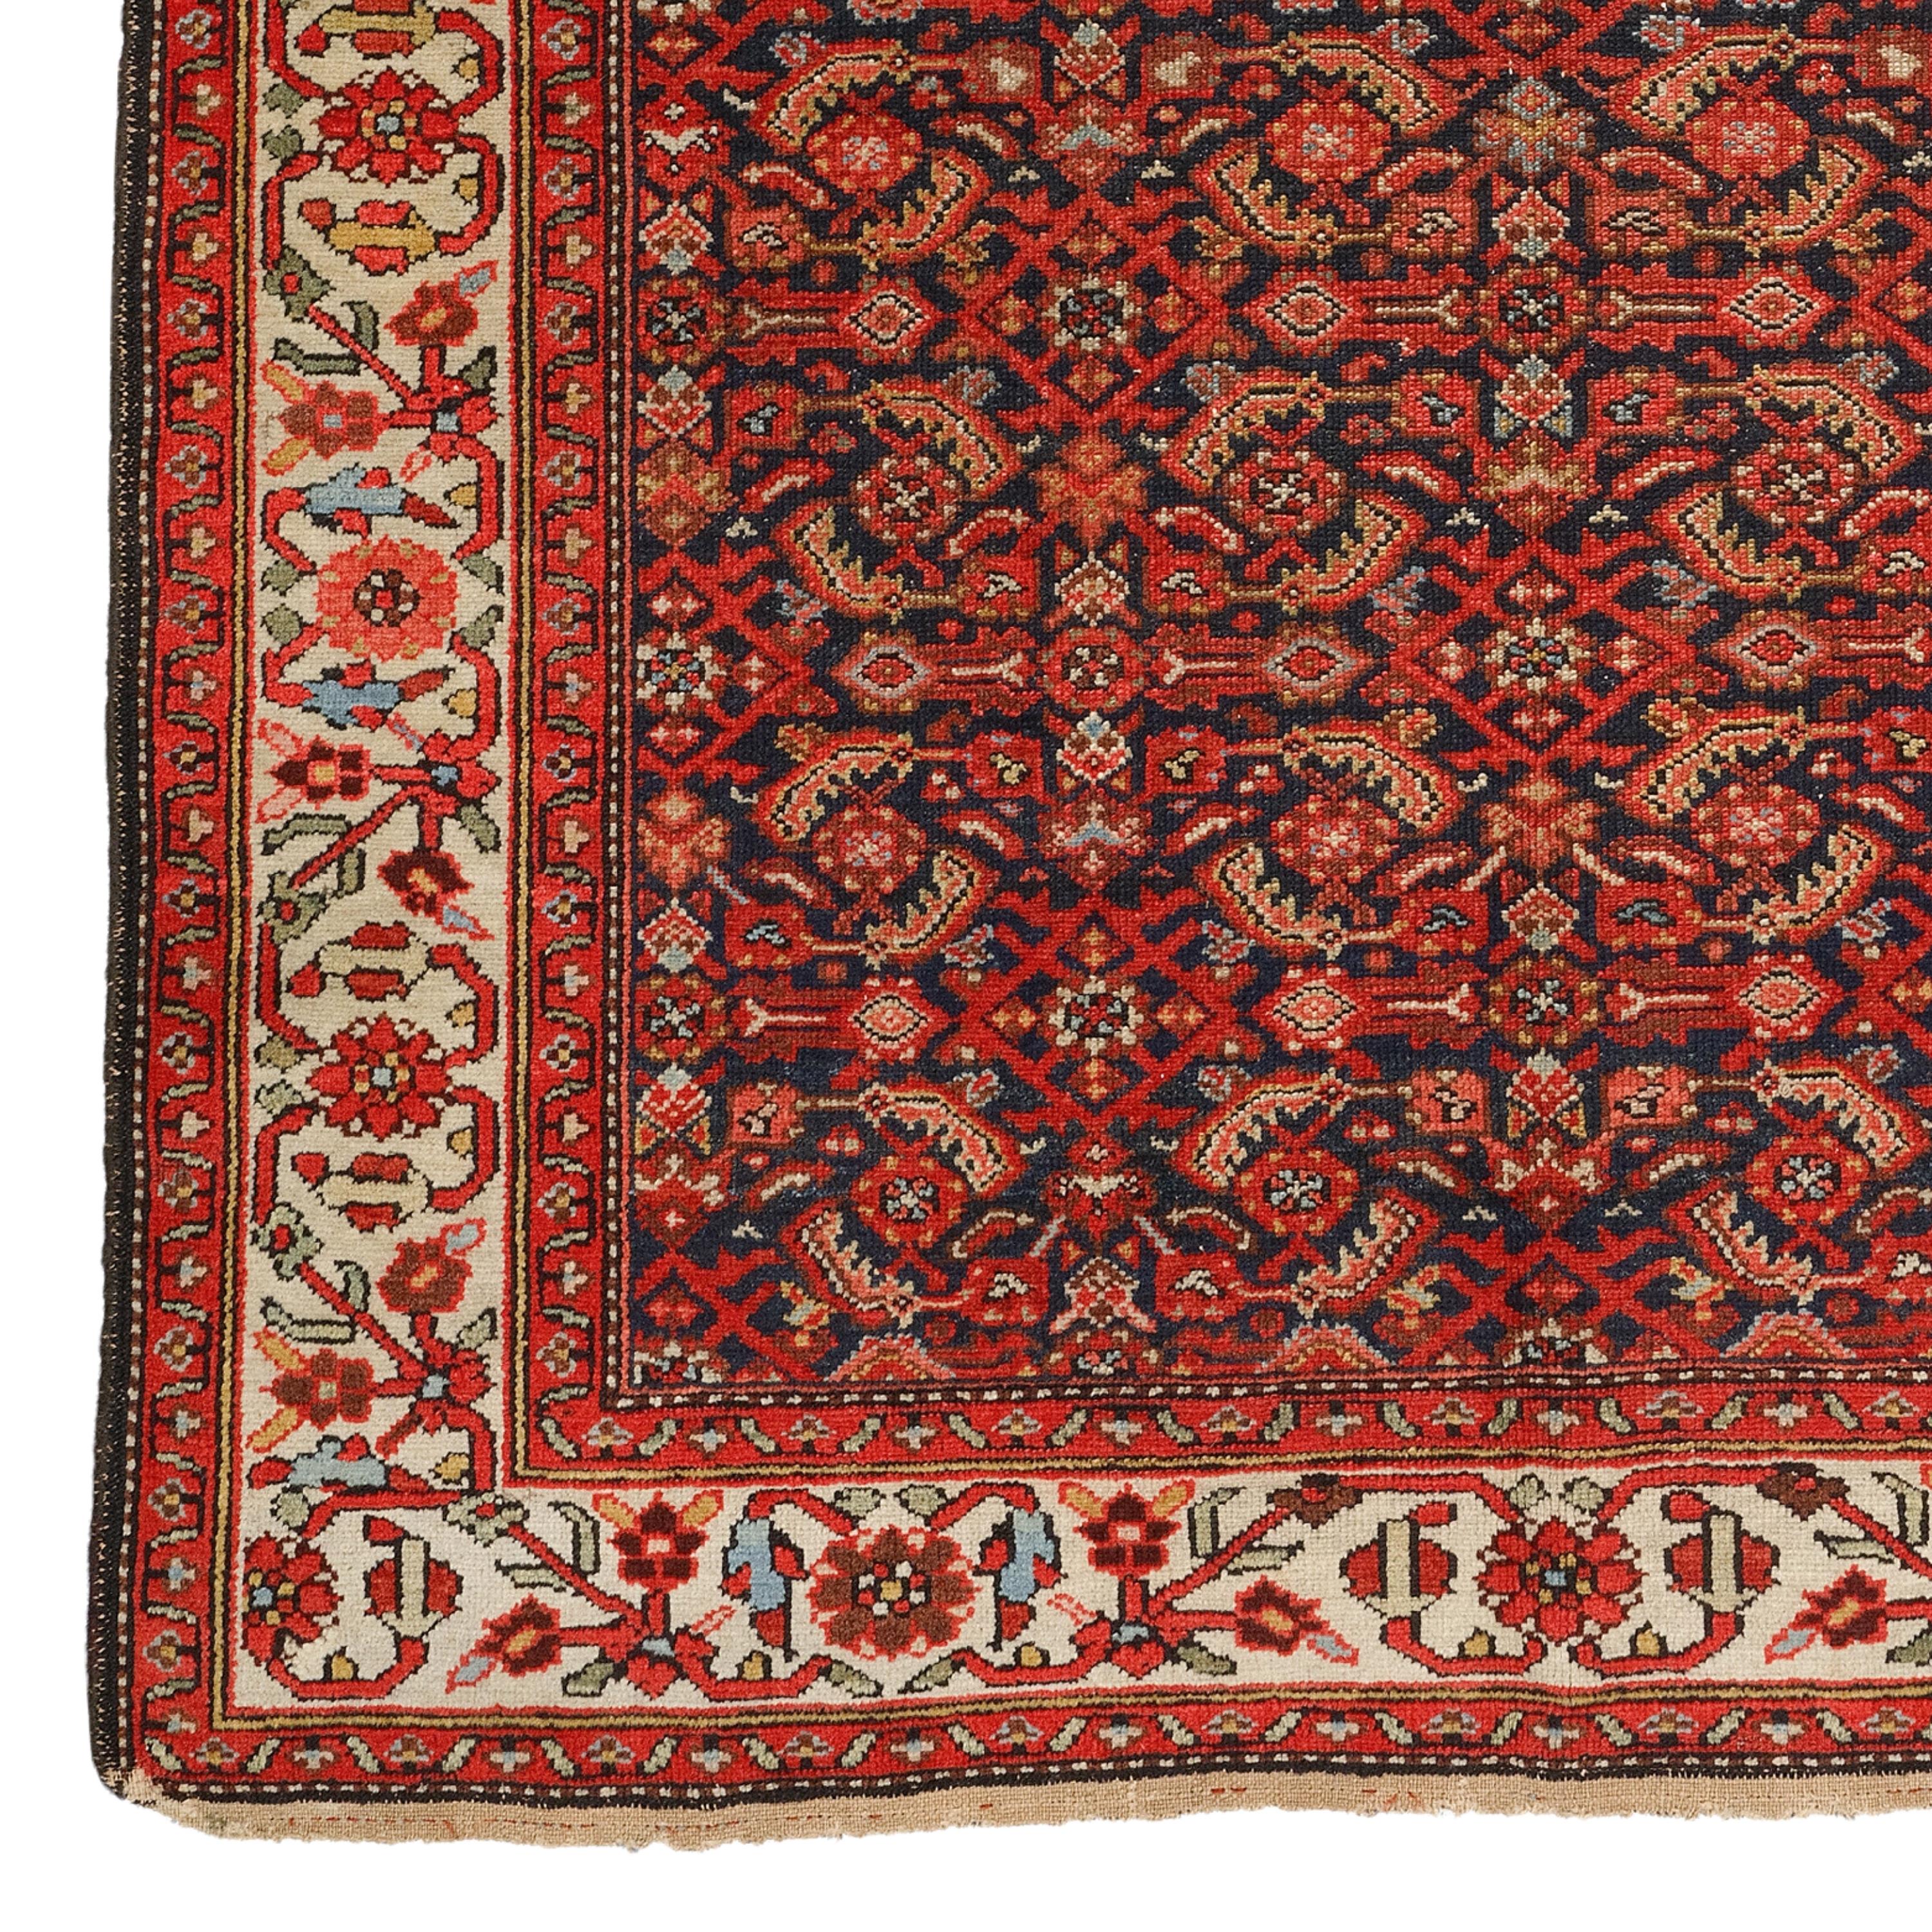 Melayer-Teppich aus dem 19.

Dieser außergewöhnliche Teppich wird Sie mit seinen komplizierten Mustern und leuchtenden Farben faszinieren, die die reiche Geschichte und Handwerkskunst dieser Zeit widerspiegeln. Jeder Stich erzählt die Geschichte von